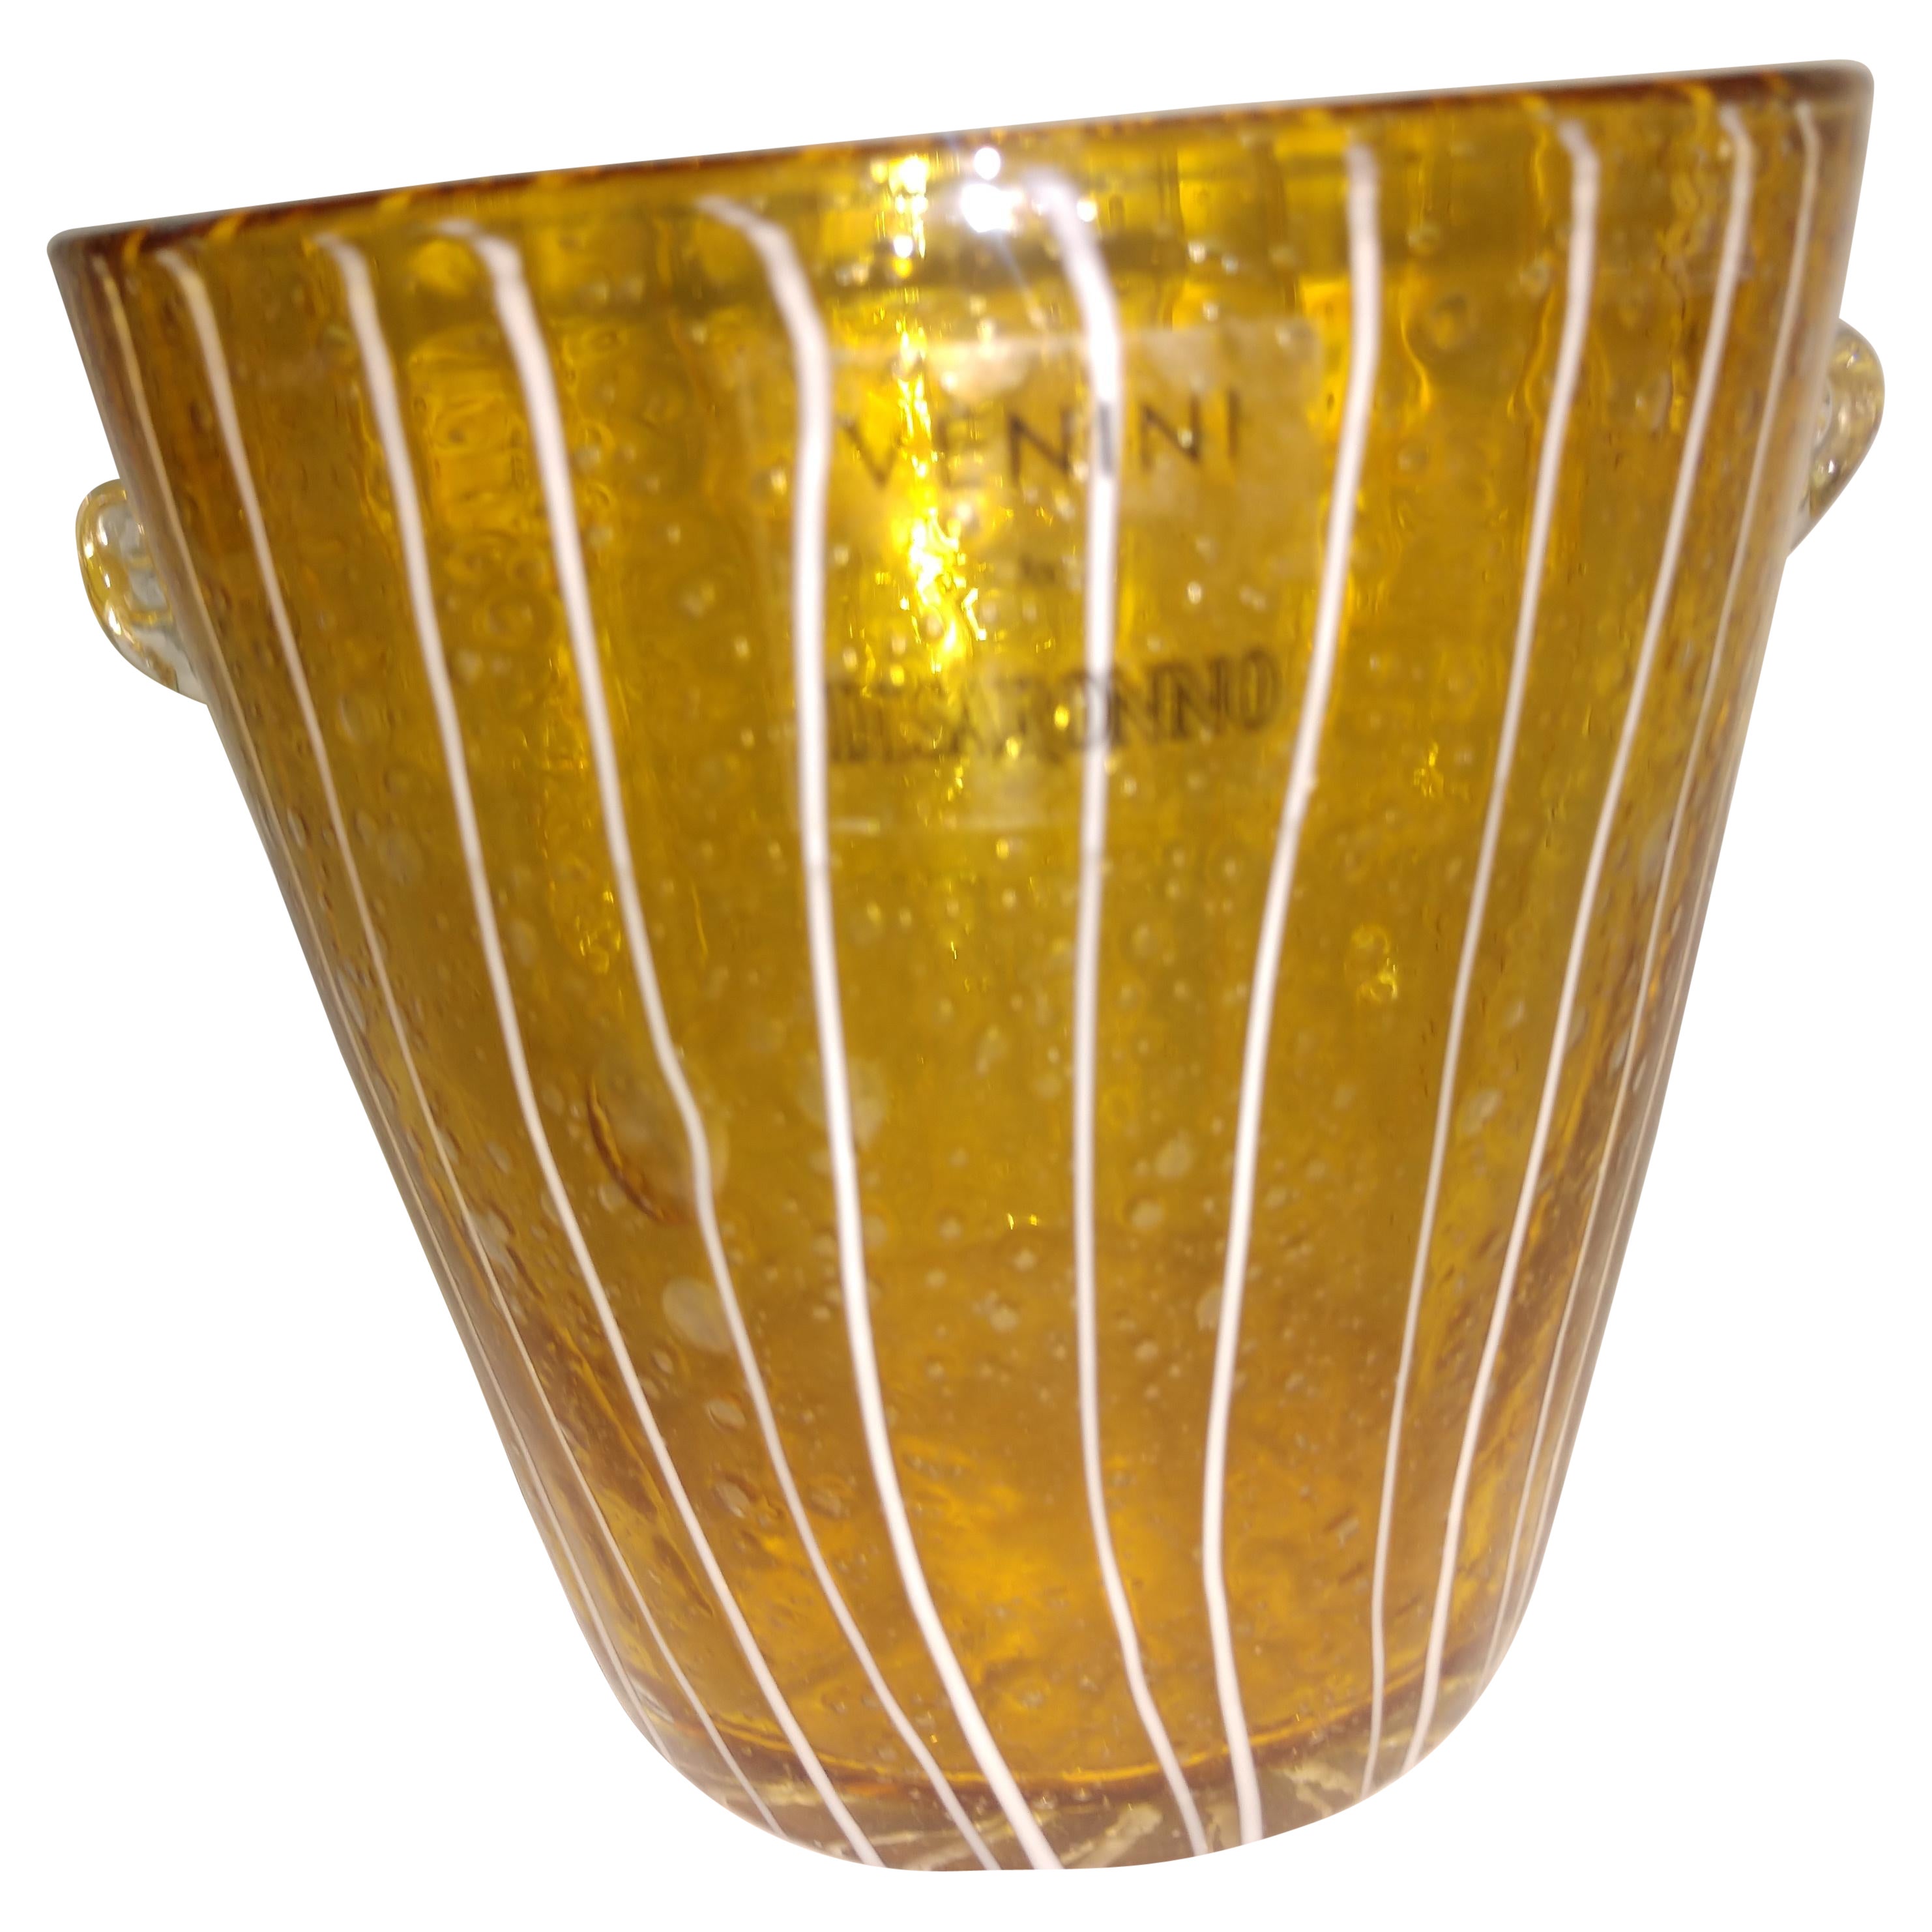 Remarquable seau à glace en verre d'art par Venini pour Disaronno. Magnifique verre ambré avec une bruine rayée blanche.